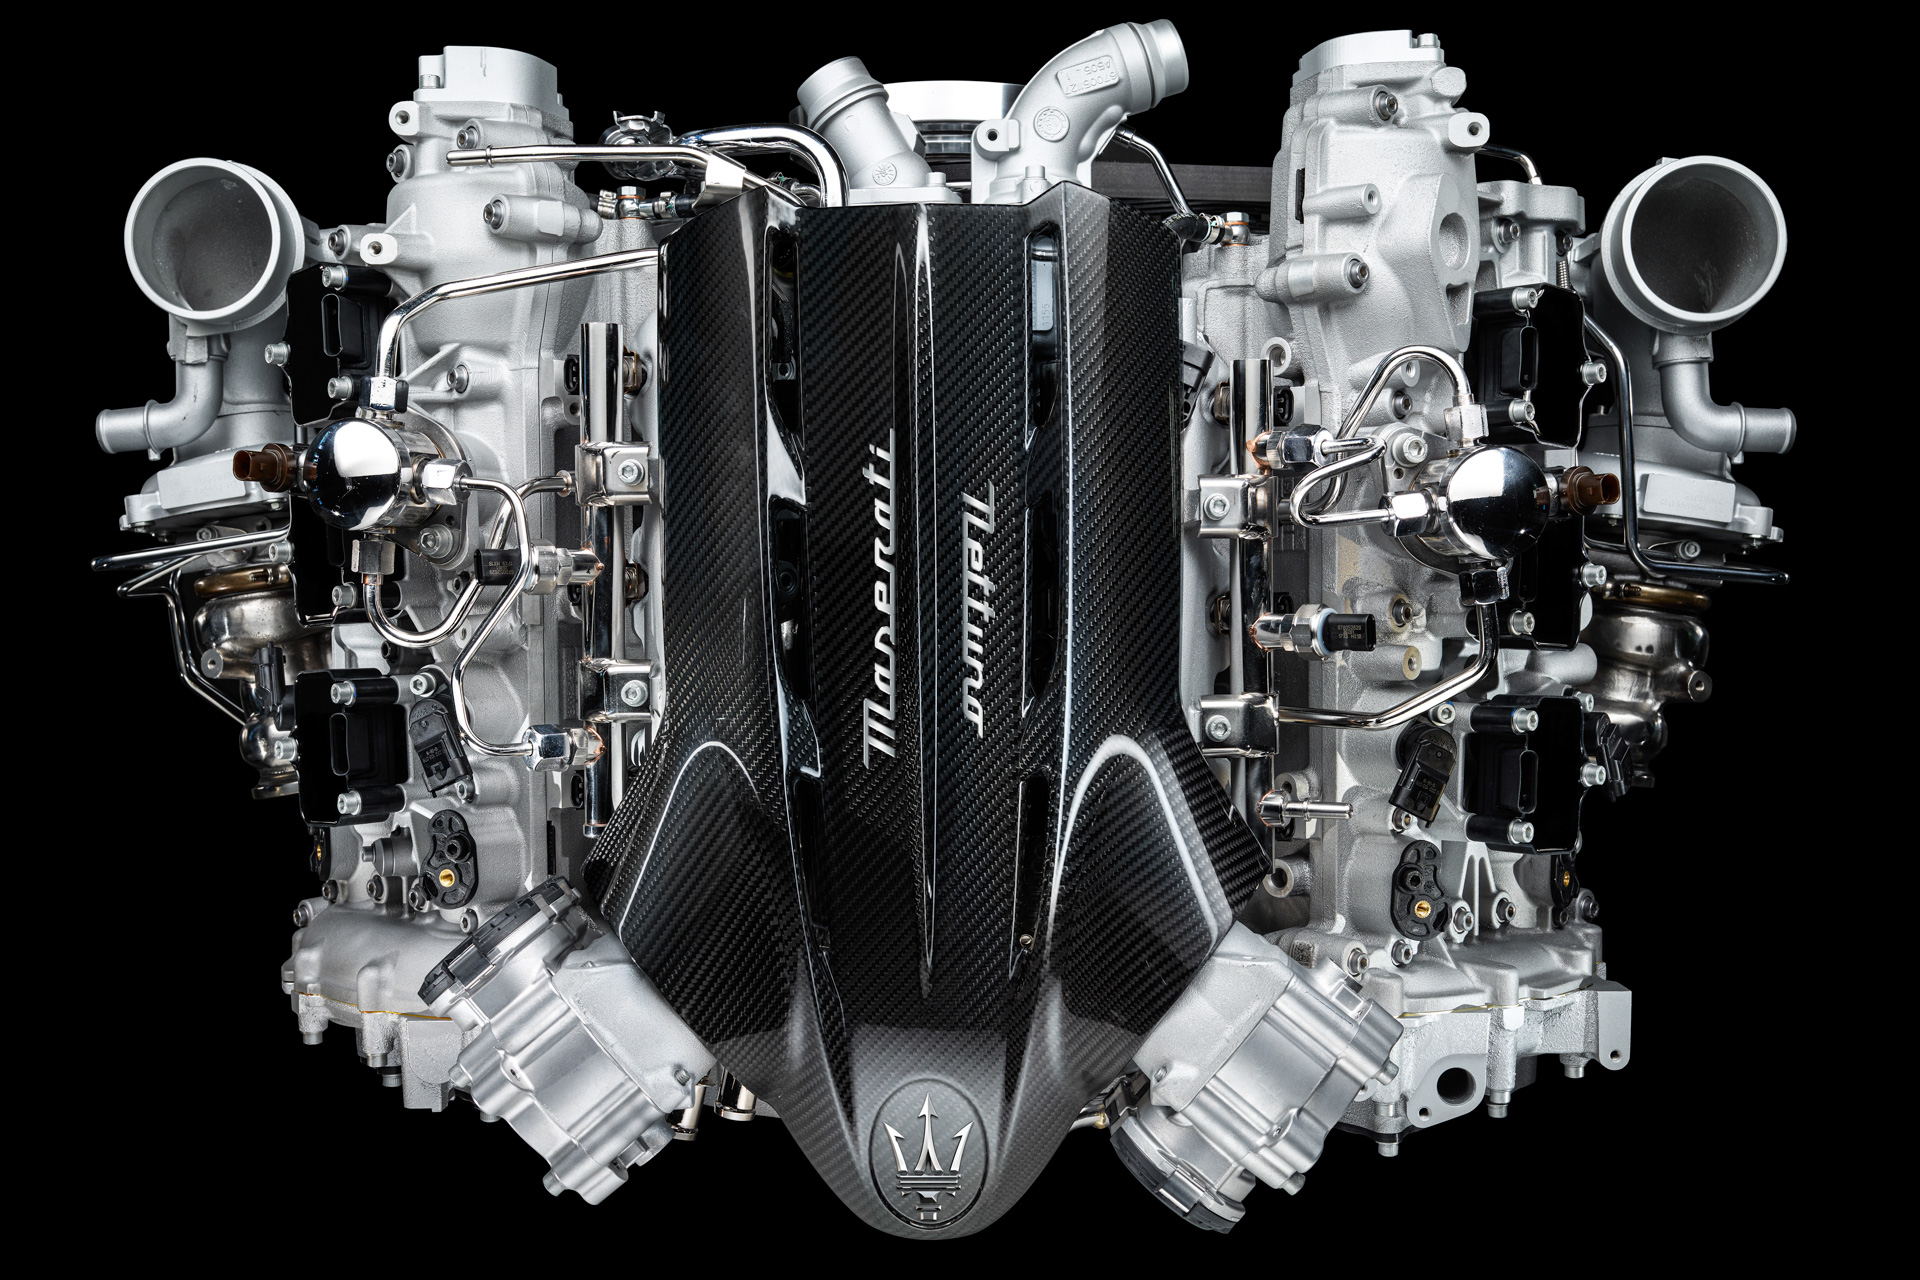 マセラティ 最高出力630psのv6 3 0リッターツインターボ ネットゥーノ 開発 Car Watch